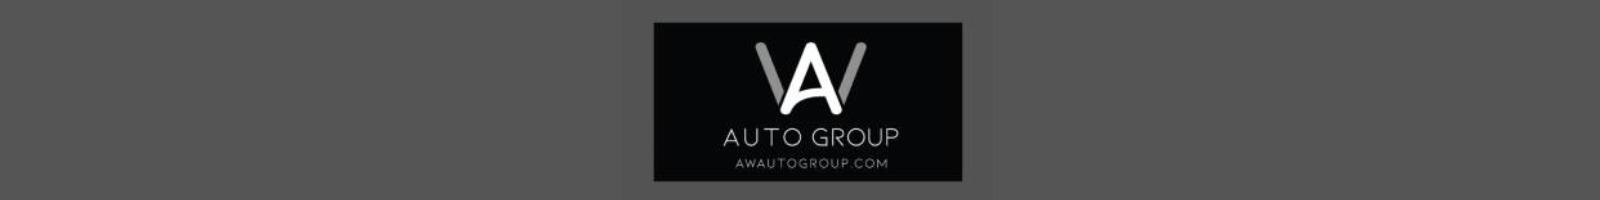 AW Auto Group